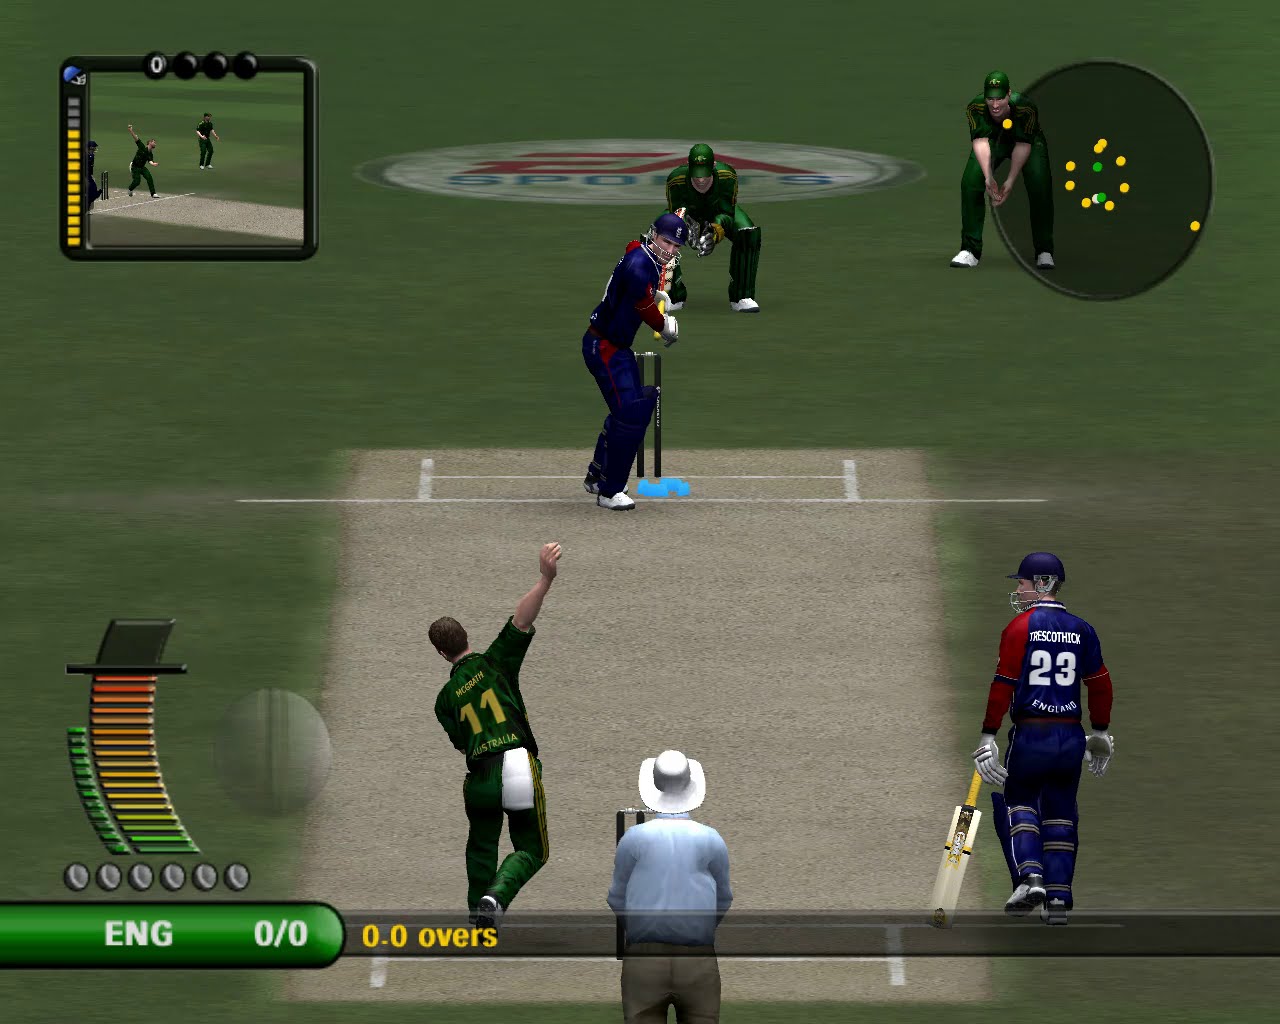 Ea cricket 2007 size